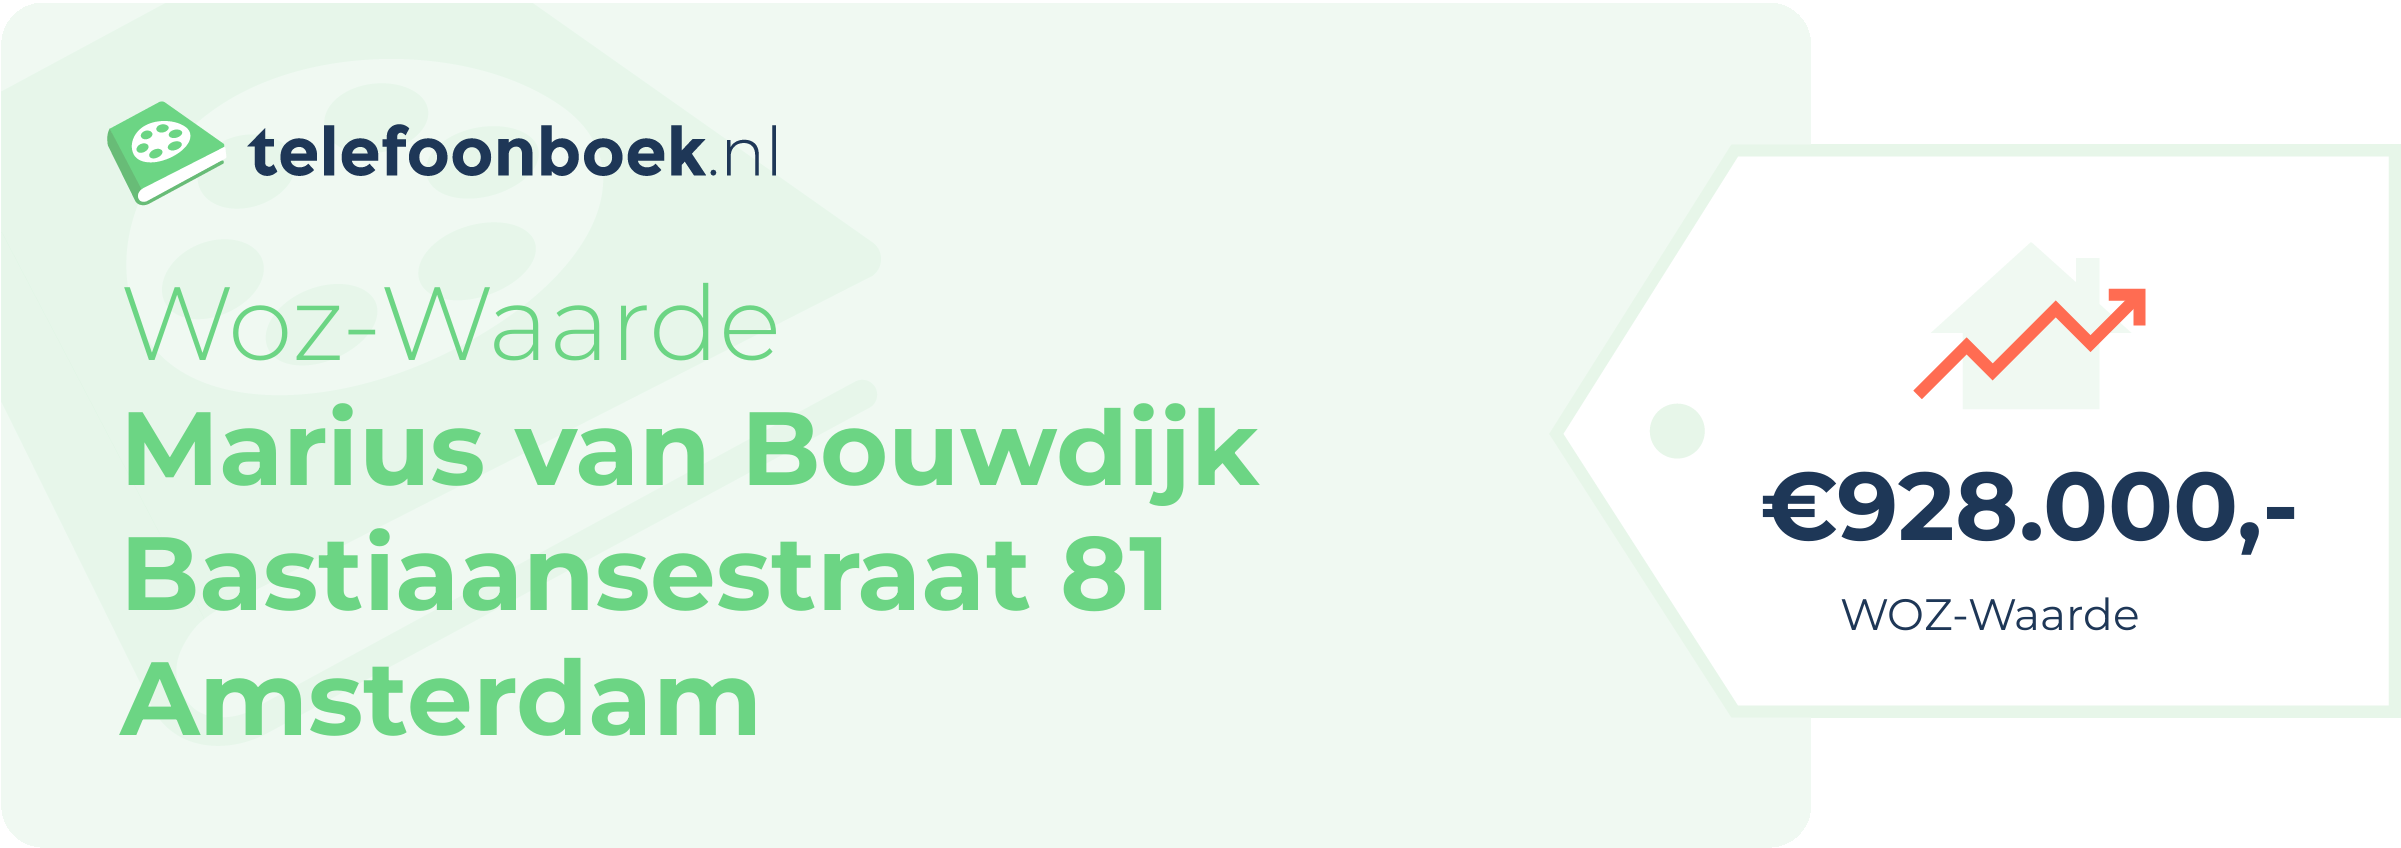 WOZ-waarde Marius Van Bouwdijk Bastiaansestraat 81 Amsterdam